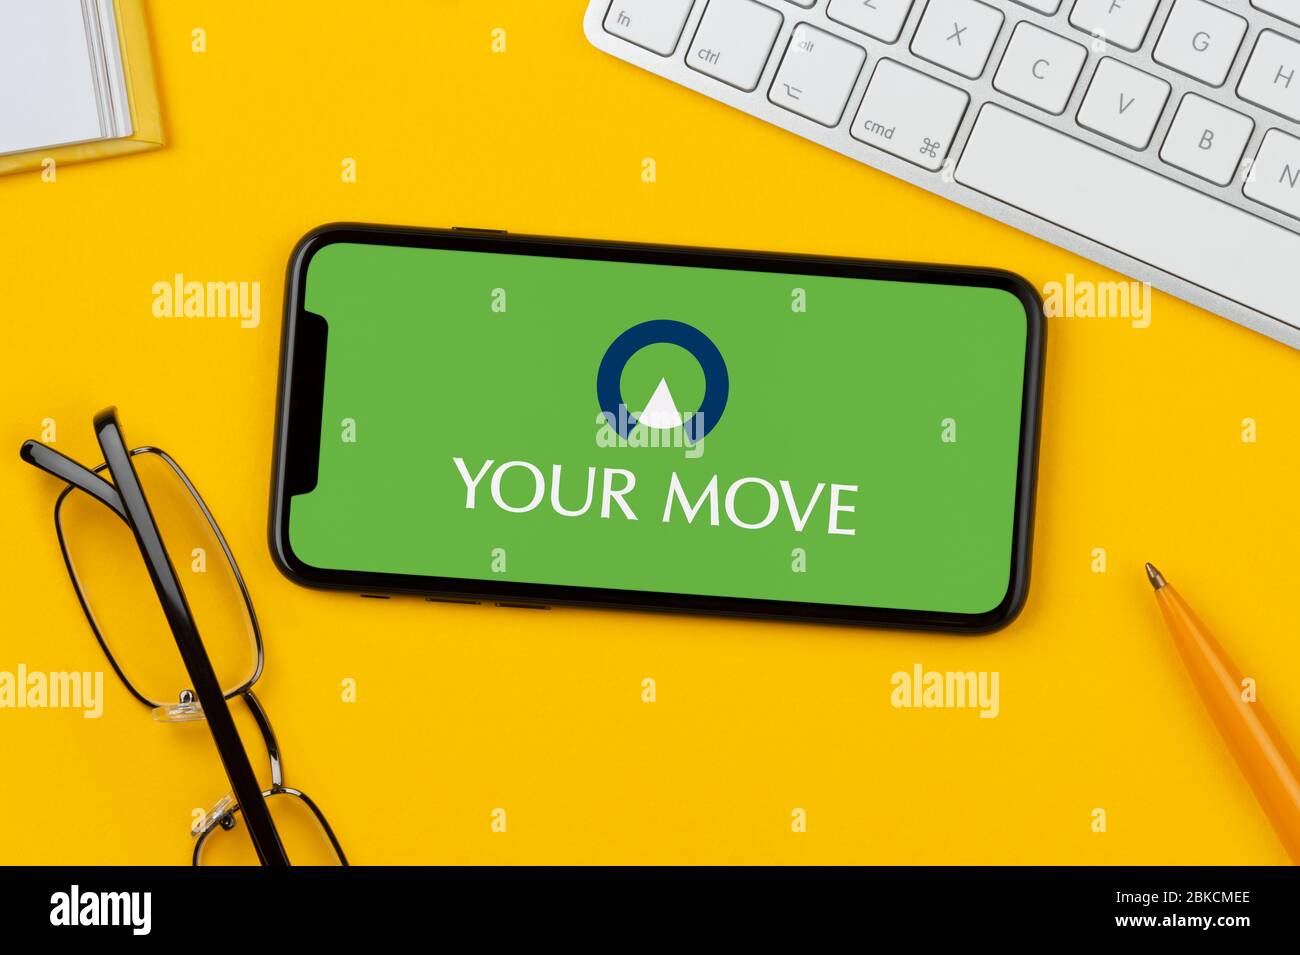 Uno smartphone con il logo Your Move è posizionato su uno sfondo giallo insieme a tastiera, occhiali, penna e libro (solo per uso editoriale). Foto Stock